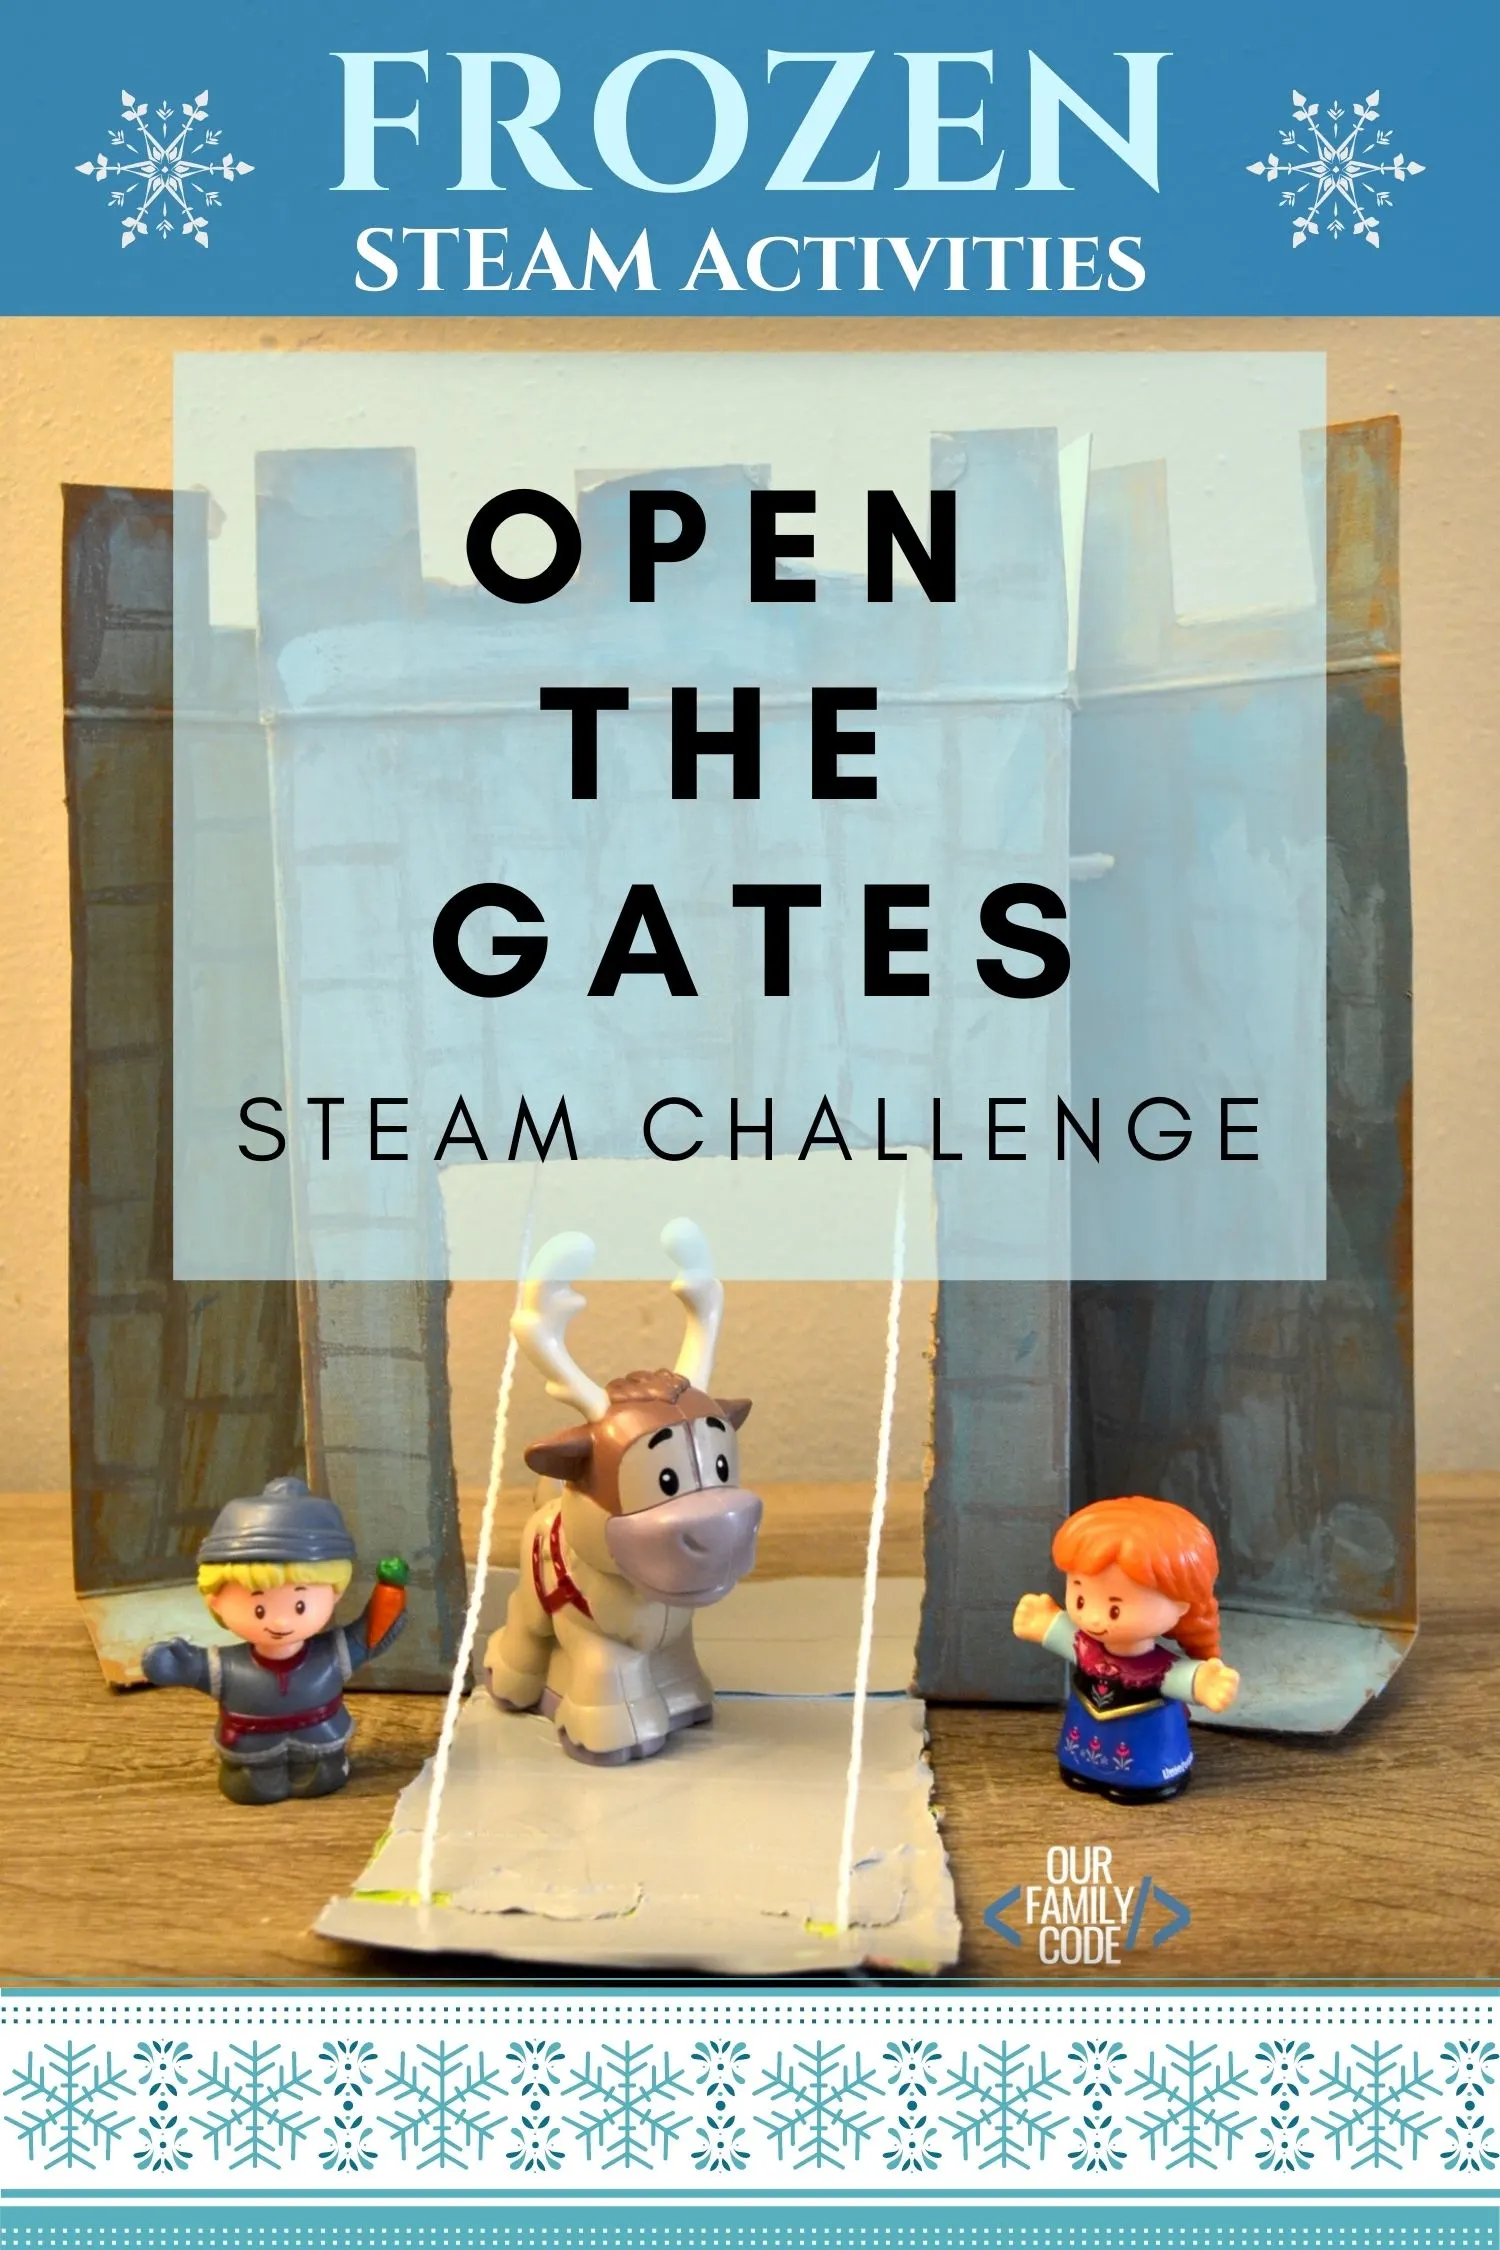 Frozen steam activities drawbridge steam challenge open the gates